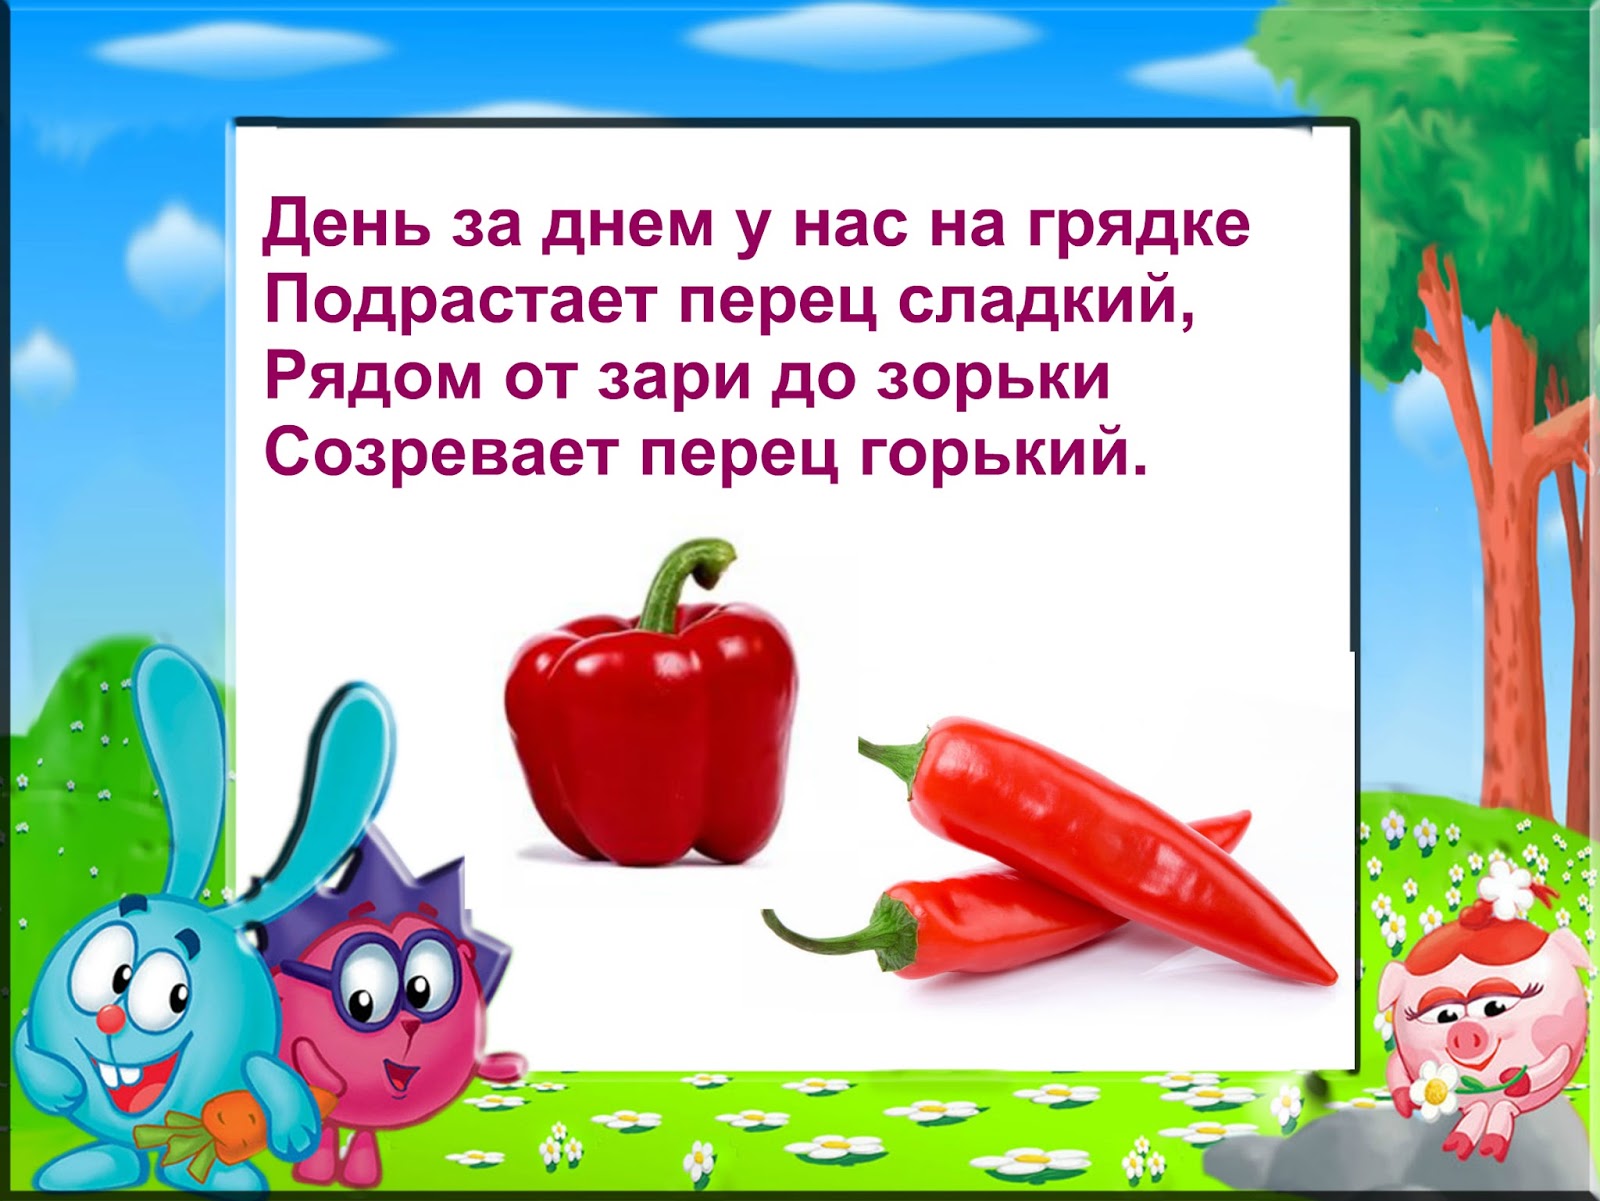 Летом у нас на грядках текст. Стихотворение про перец для детей. Стихи про овощи. Детский стишок про перец. Загадки про перец для детей.